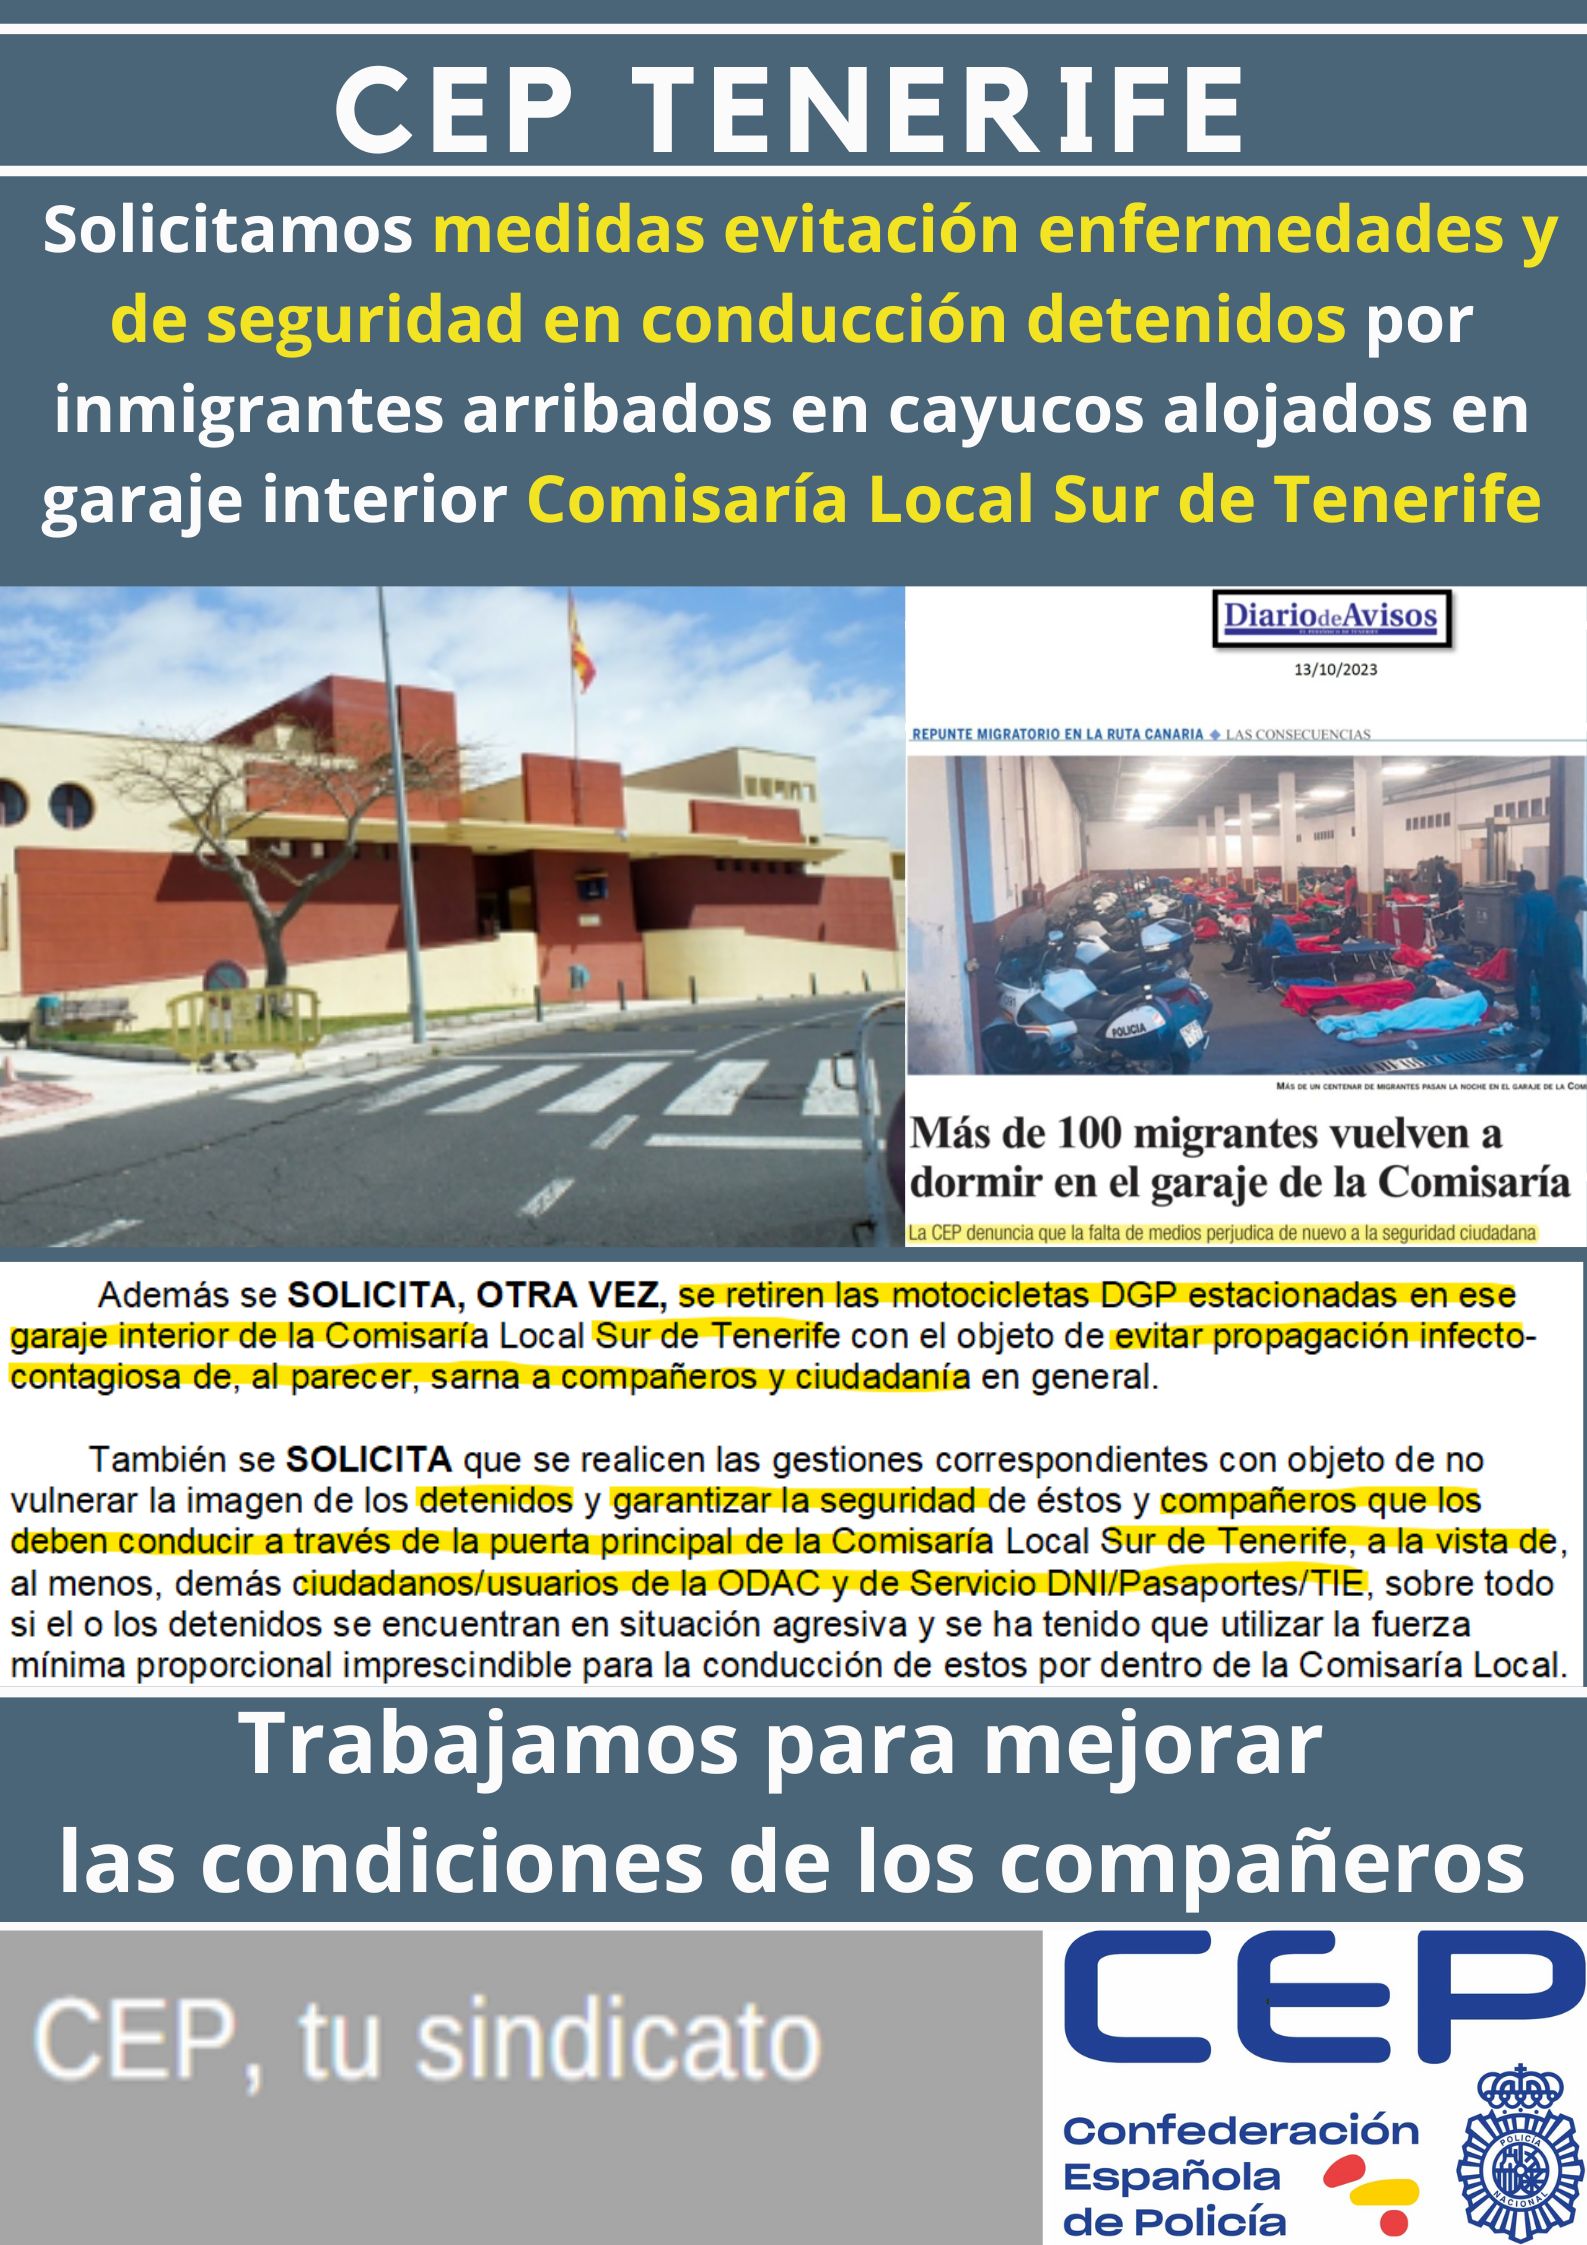 Solicitamos medidas para evitar enfermedades y de seguridad en conducción detenidos por inmigrantes arribados en cayucos alojados en garaje interior Comisaría Local Sur de Tenerife